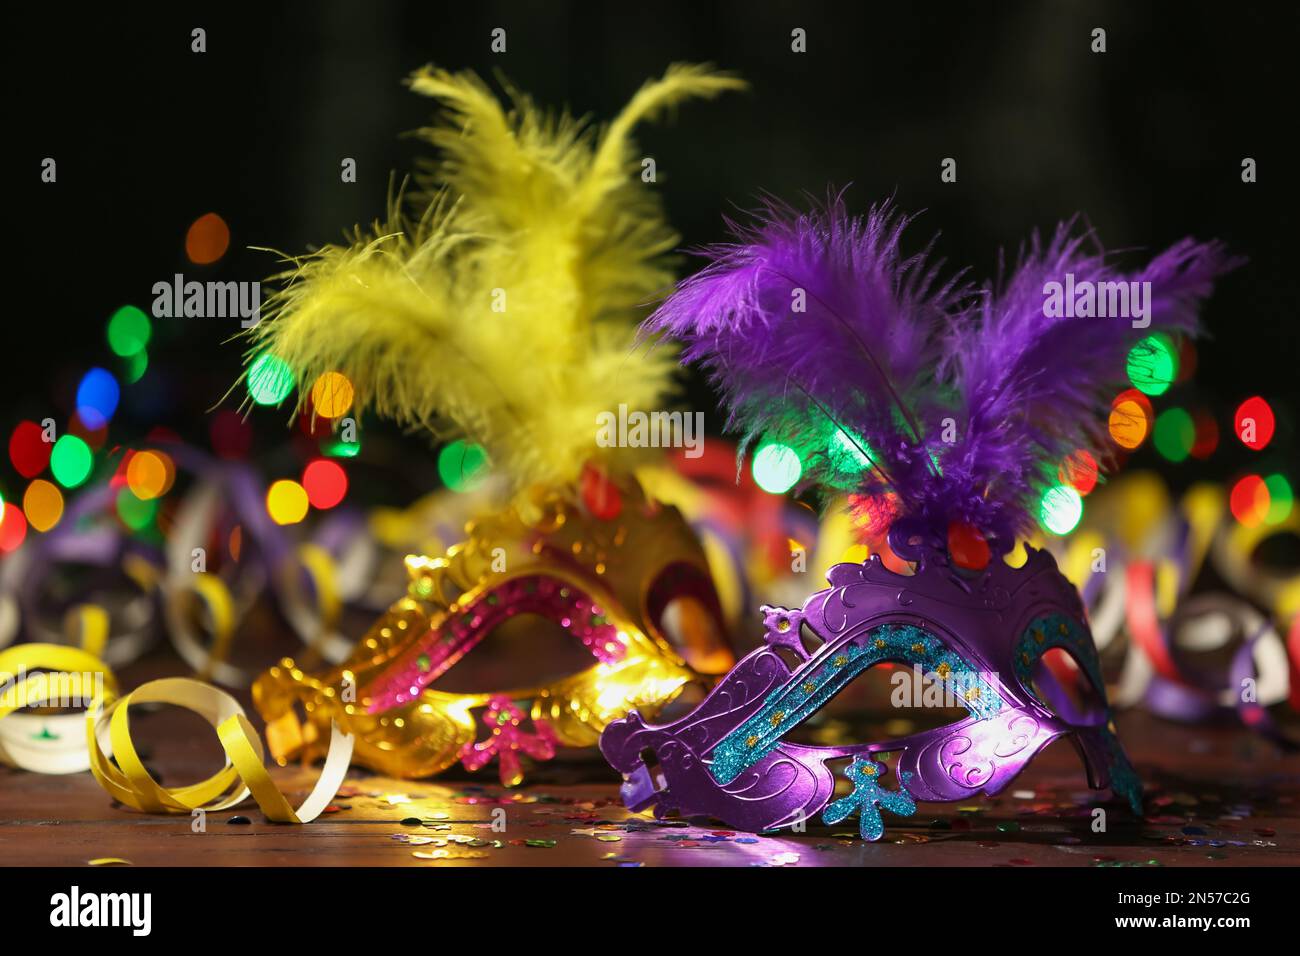 Magnifiques masques de carnaval et décoration de fête sur la table contre les lumières floues Banque D'Images